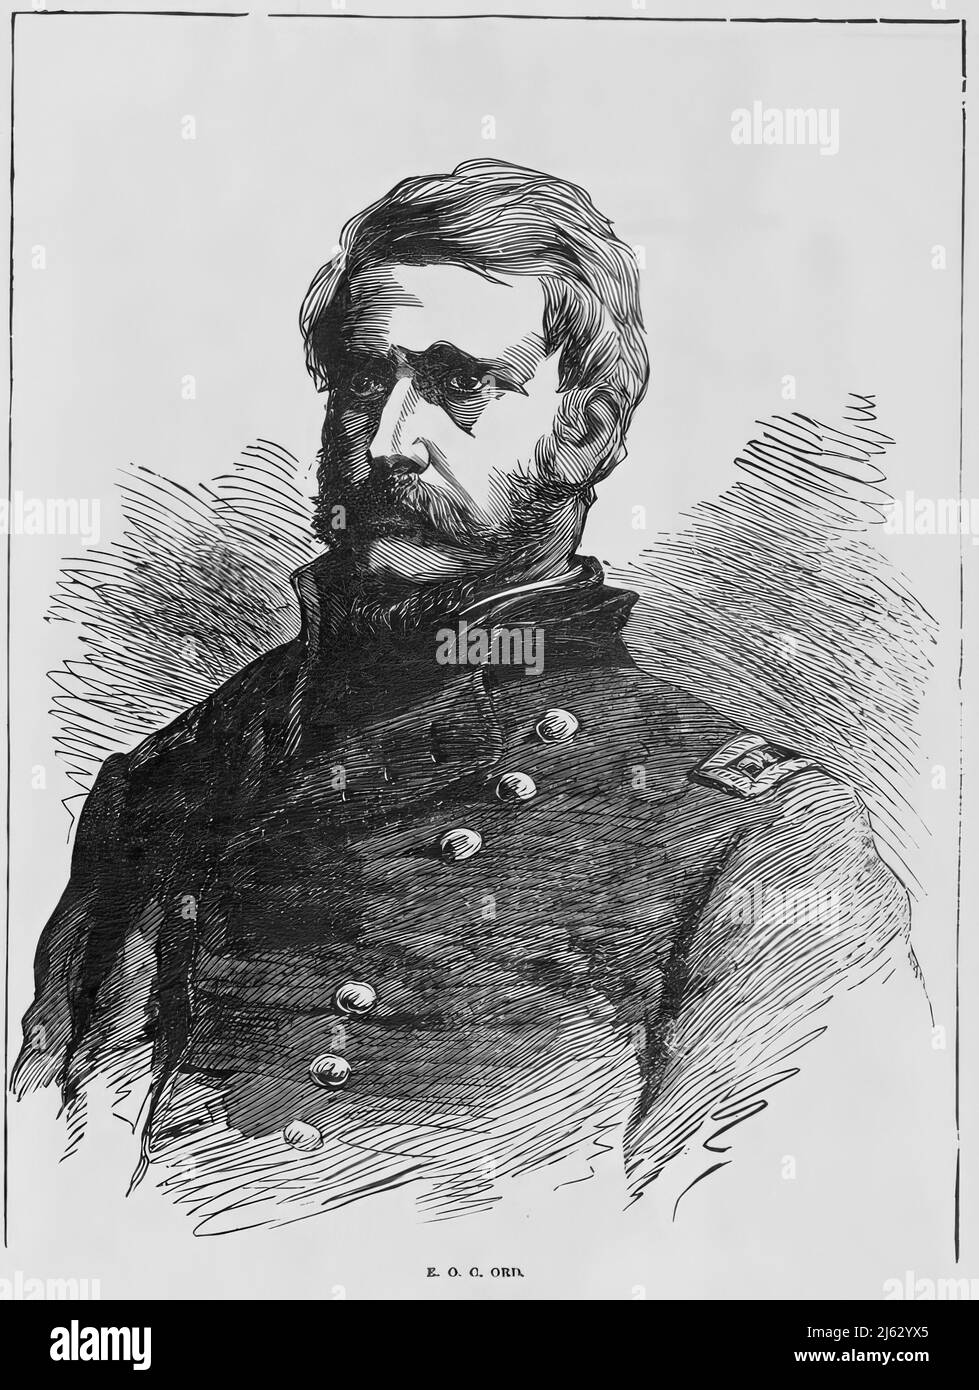 Ritratto di Edward Otho Cresap Ord, generale dell'esercito dell'Unione nella guerra civile americana. illustrazione del 19th secolo Foto Stock